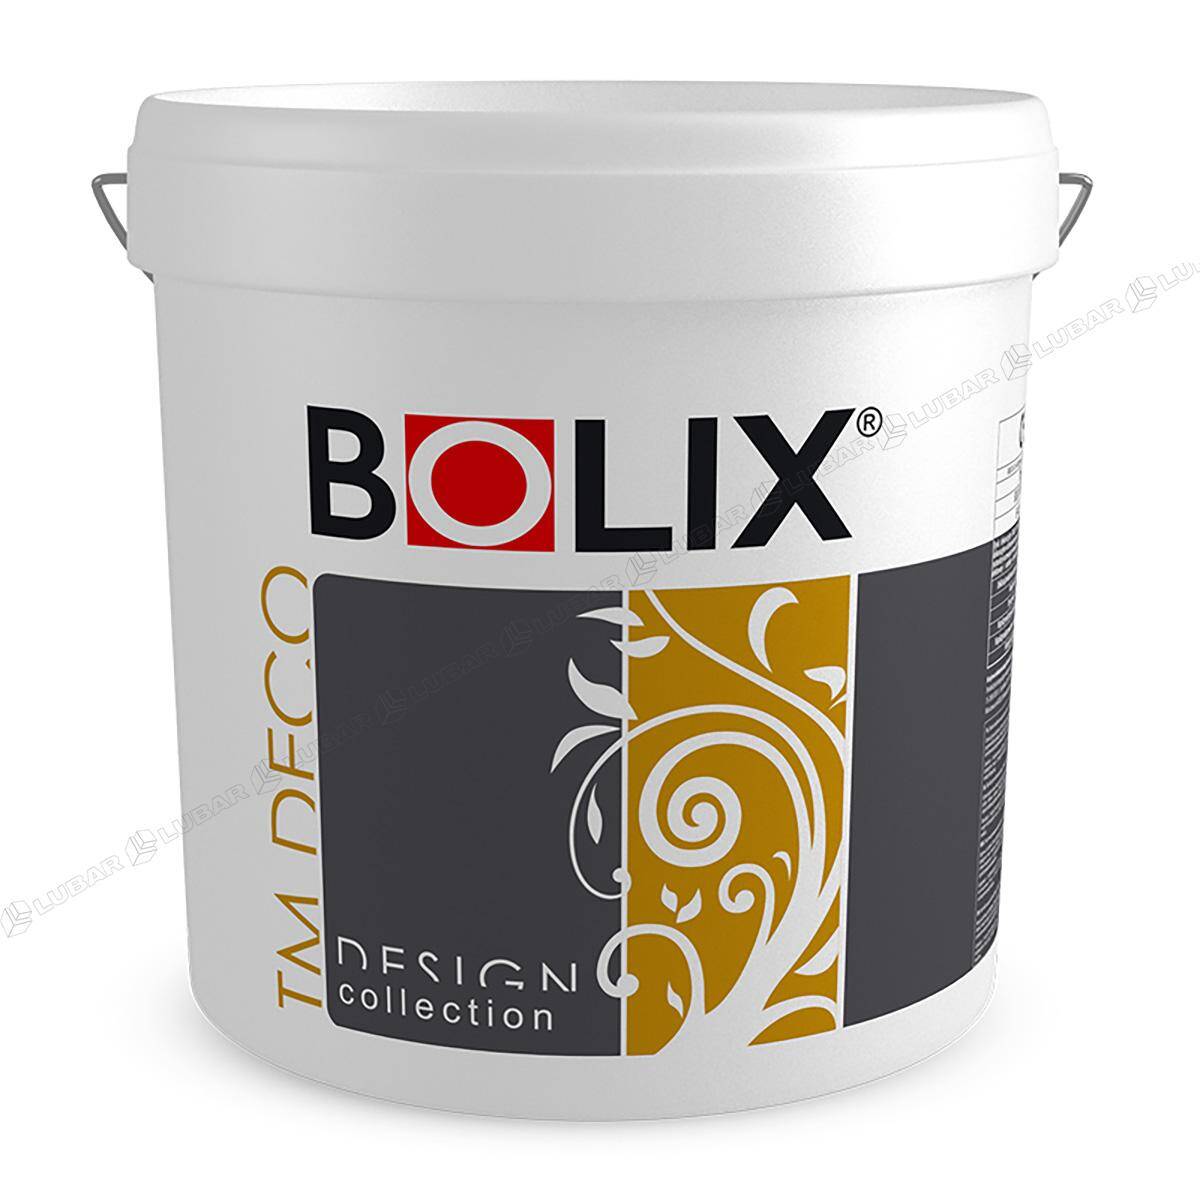 BOLIX TM DECO Tynk dekoracyjny z miką 25 kg GREY LIGHT TMD29